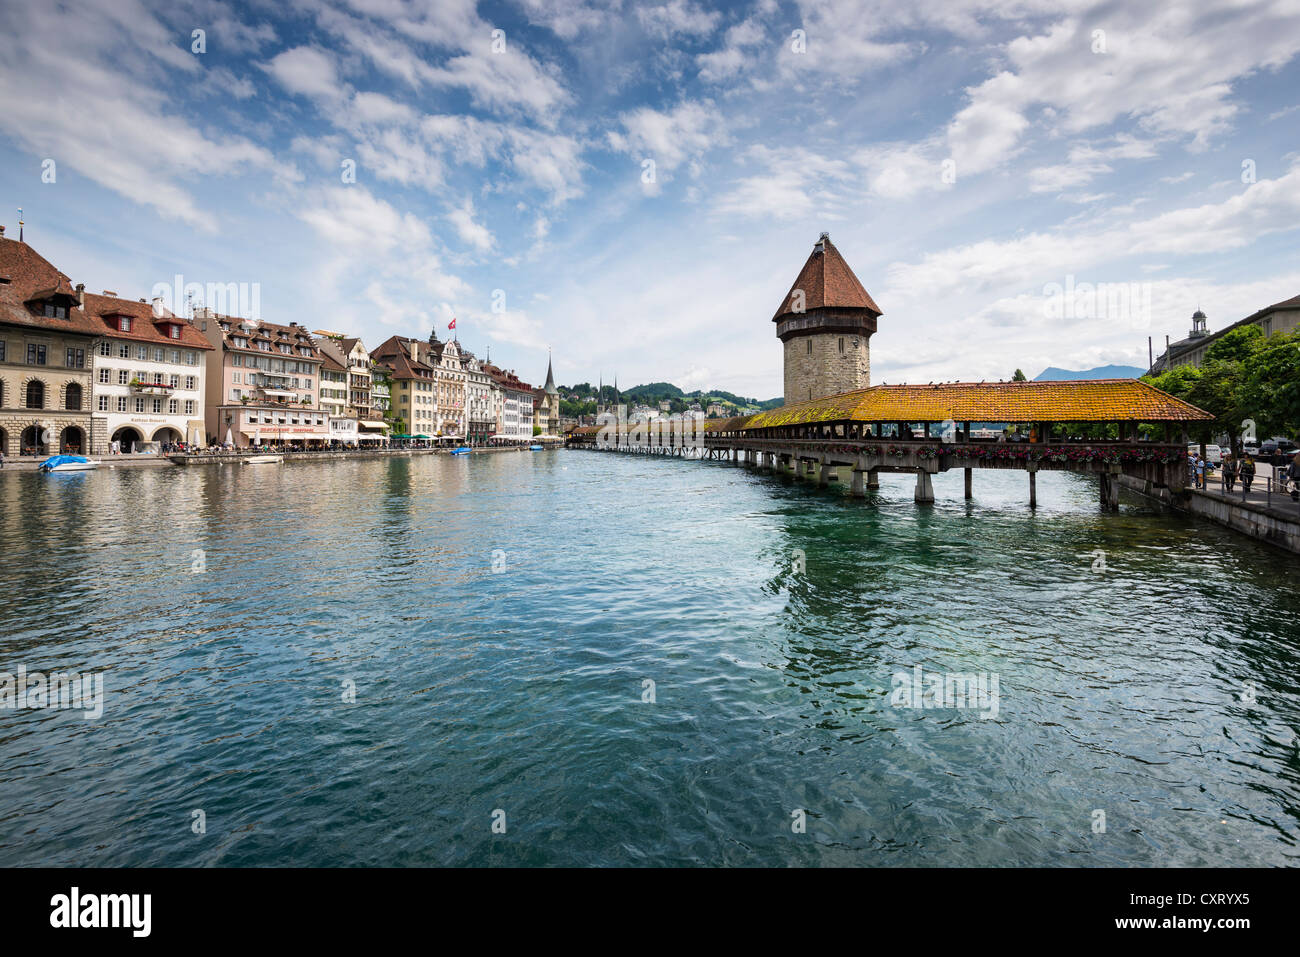 Blick über die Reuss, historischen Stadtteil von Luzern und Kapellbruecke Brücke, Luzern, Kanton Luzern, Schweiz Stockfoto